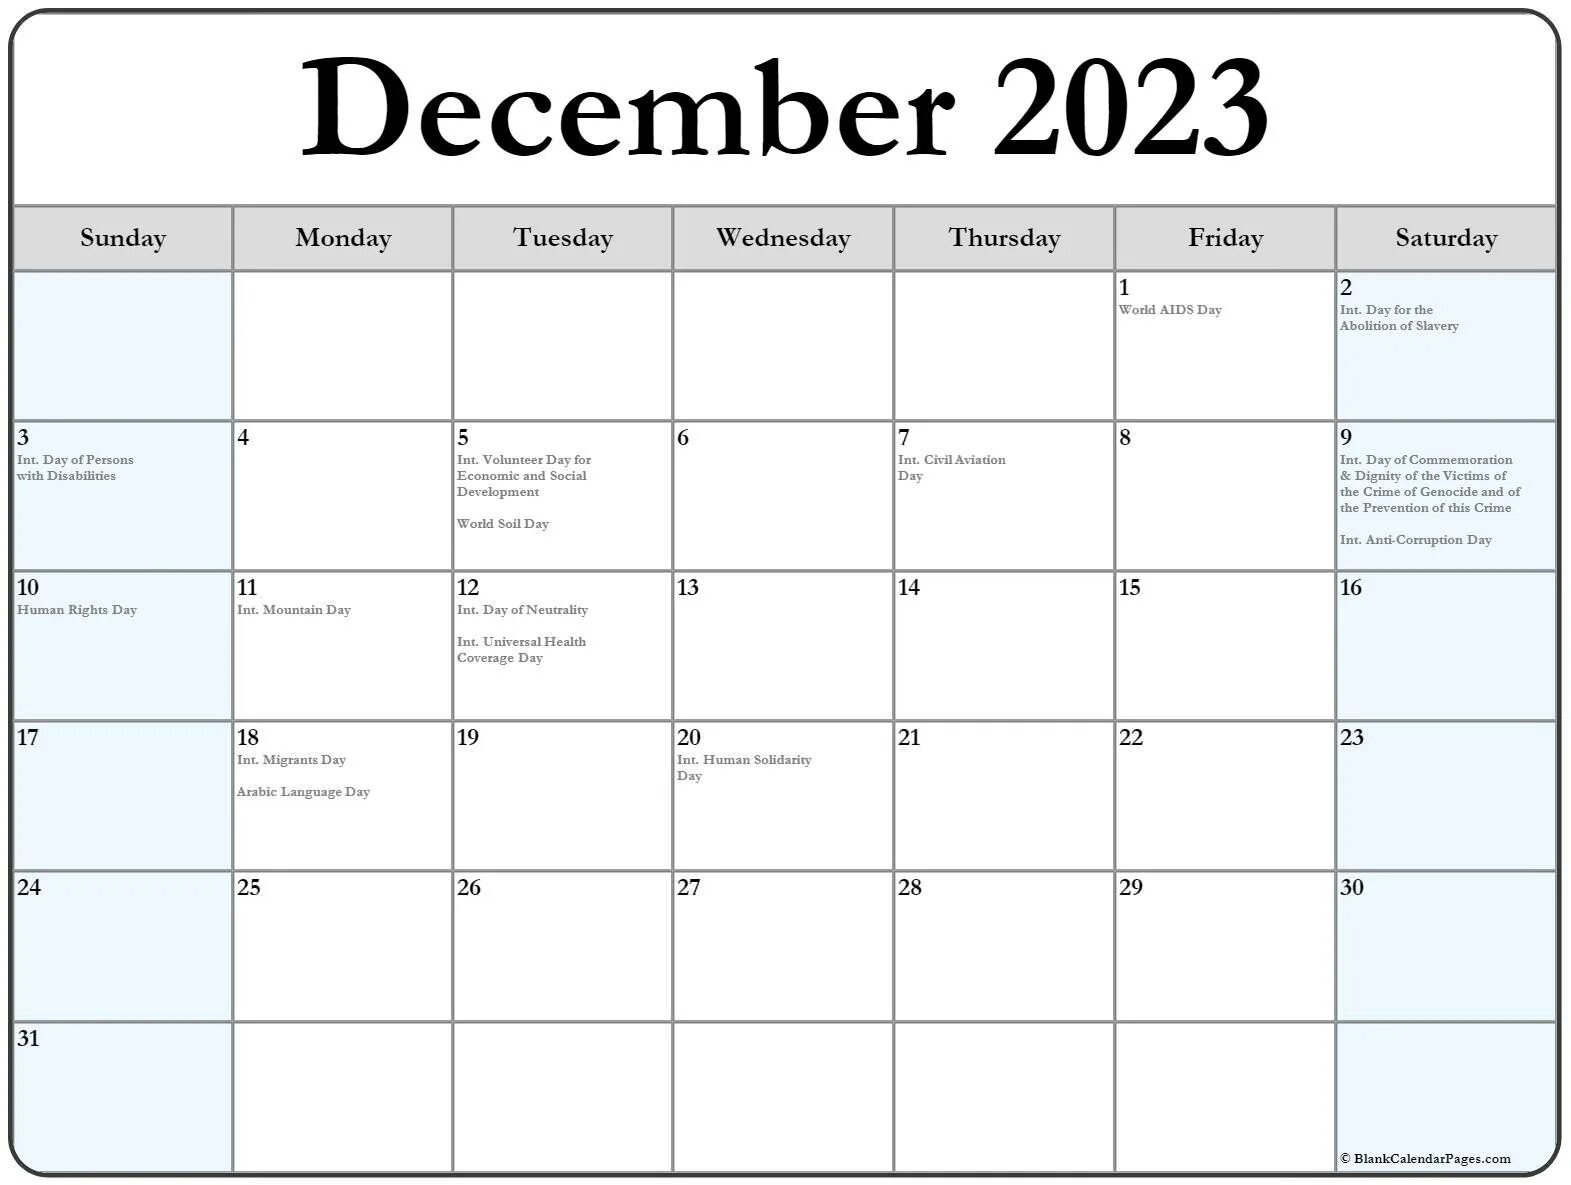 Рыбалка декабрь 2023. Календарь декабрь 2023. Календарь на декабрь 2023 года. Ноябрь декабрь 2023. Календарь на 2023 декабрь месяц с праздниками.